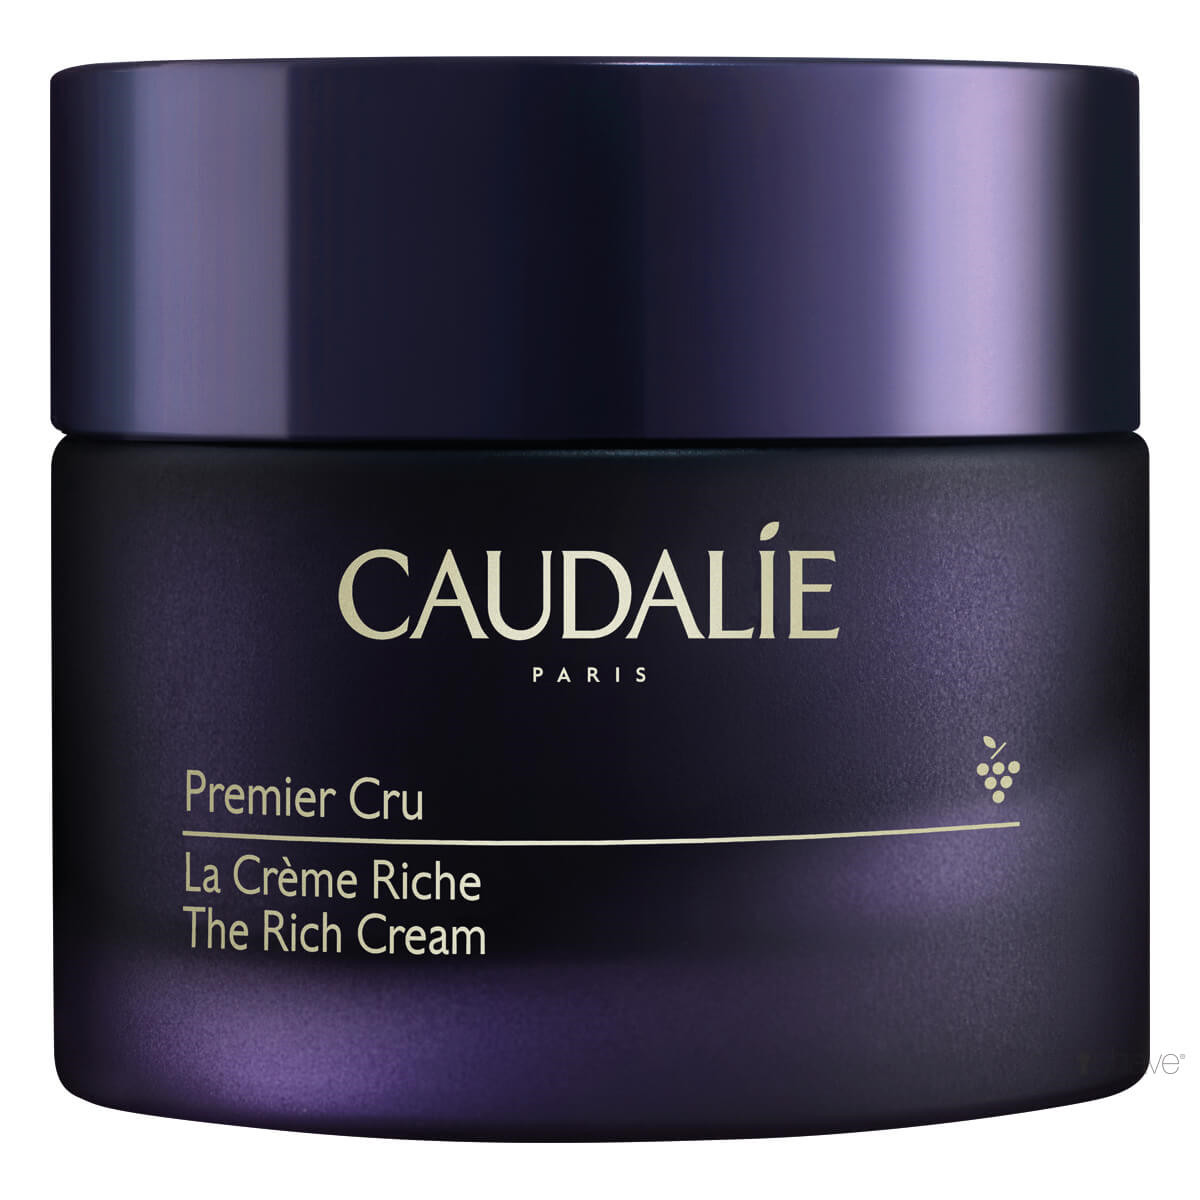 Billede af Caudalie Premier Cru, The Rich Cream, 50 ml. hos Proshave